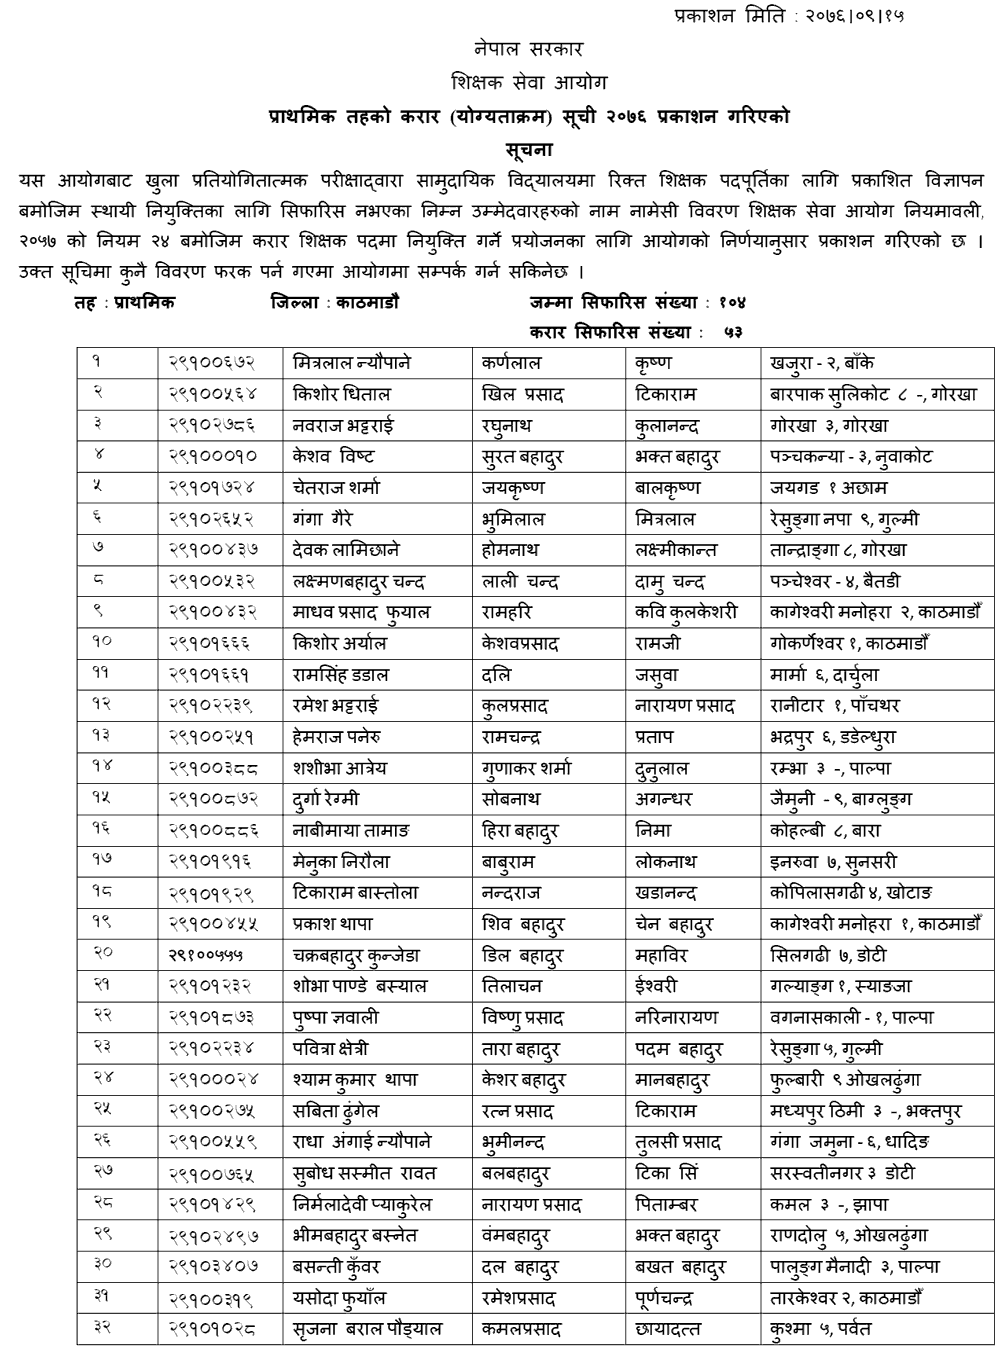 TSC Published Primary Level Contract List of Kathmandu, Dolakha, Kavrepalanchwok, and Sarlahi